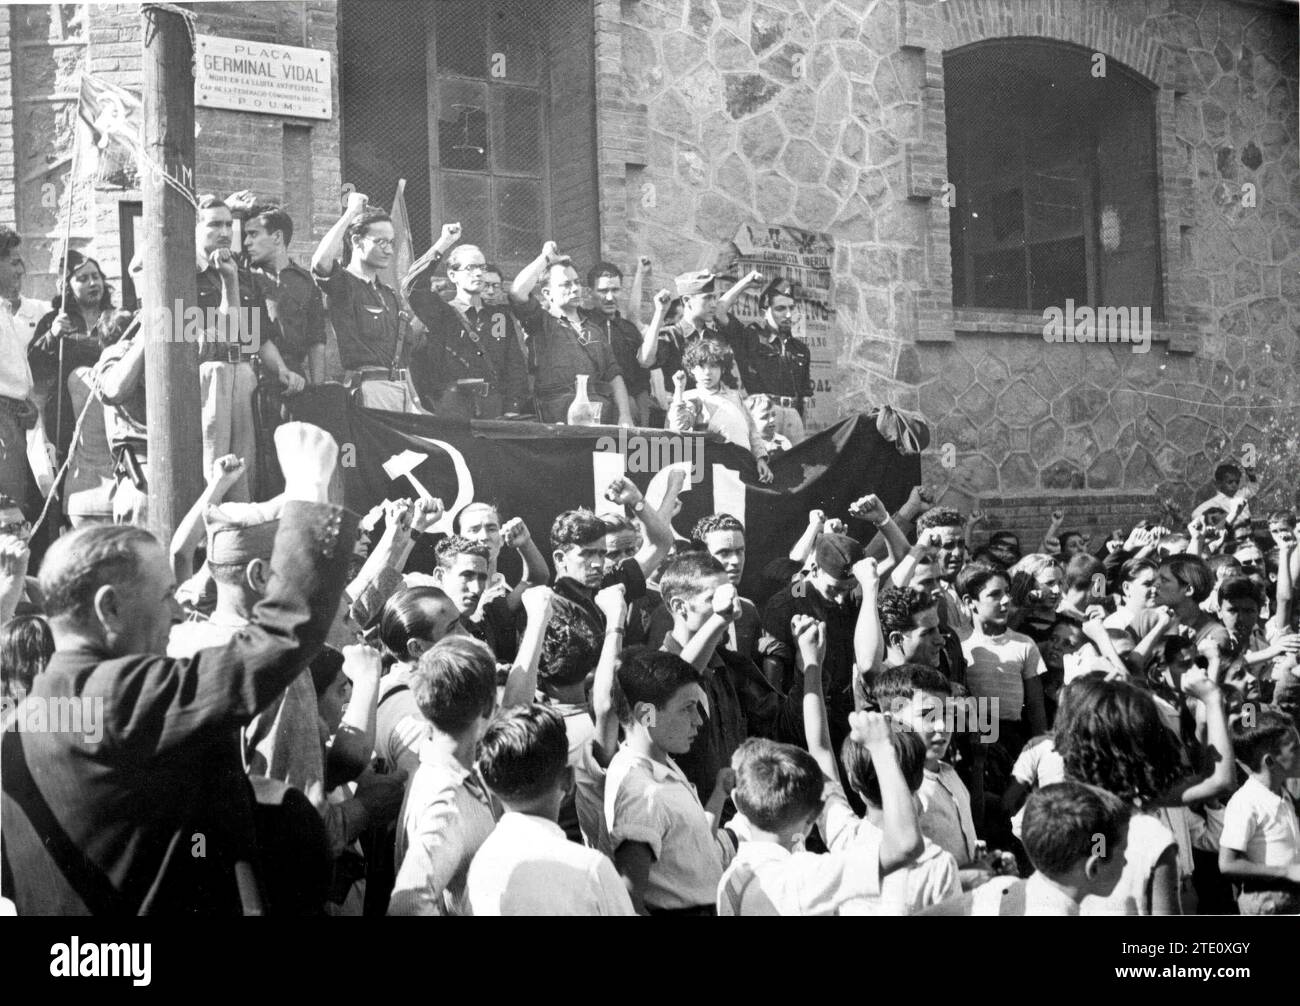 Einweihung der Plaza de Germinal Vidal, die für die republikanische Sache am 19. Juli 1936 starb. Quelle: Album / Archivo ABC / Josep Brangulí Stockfoto